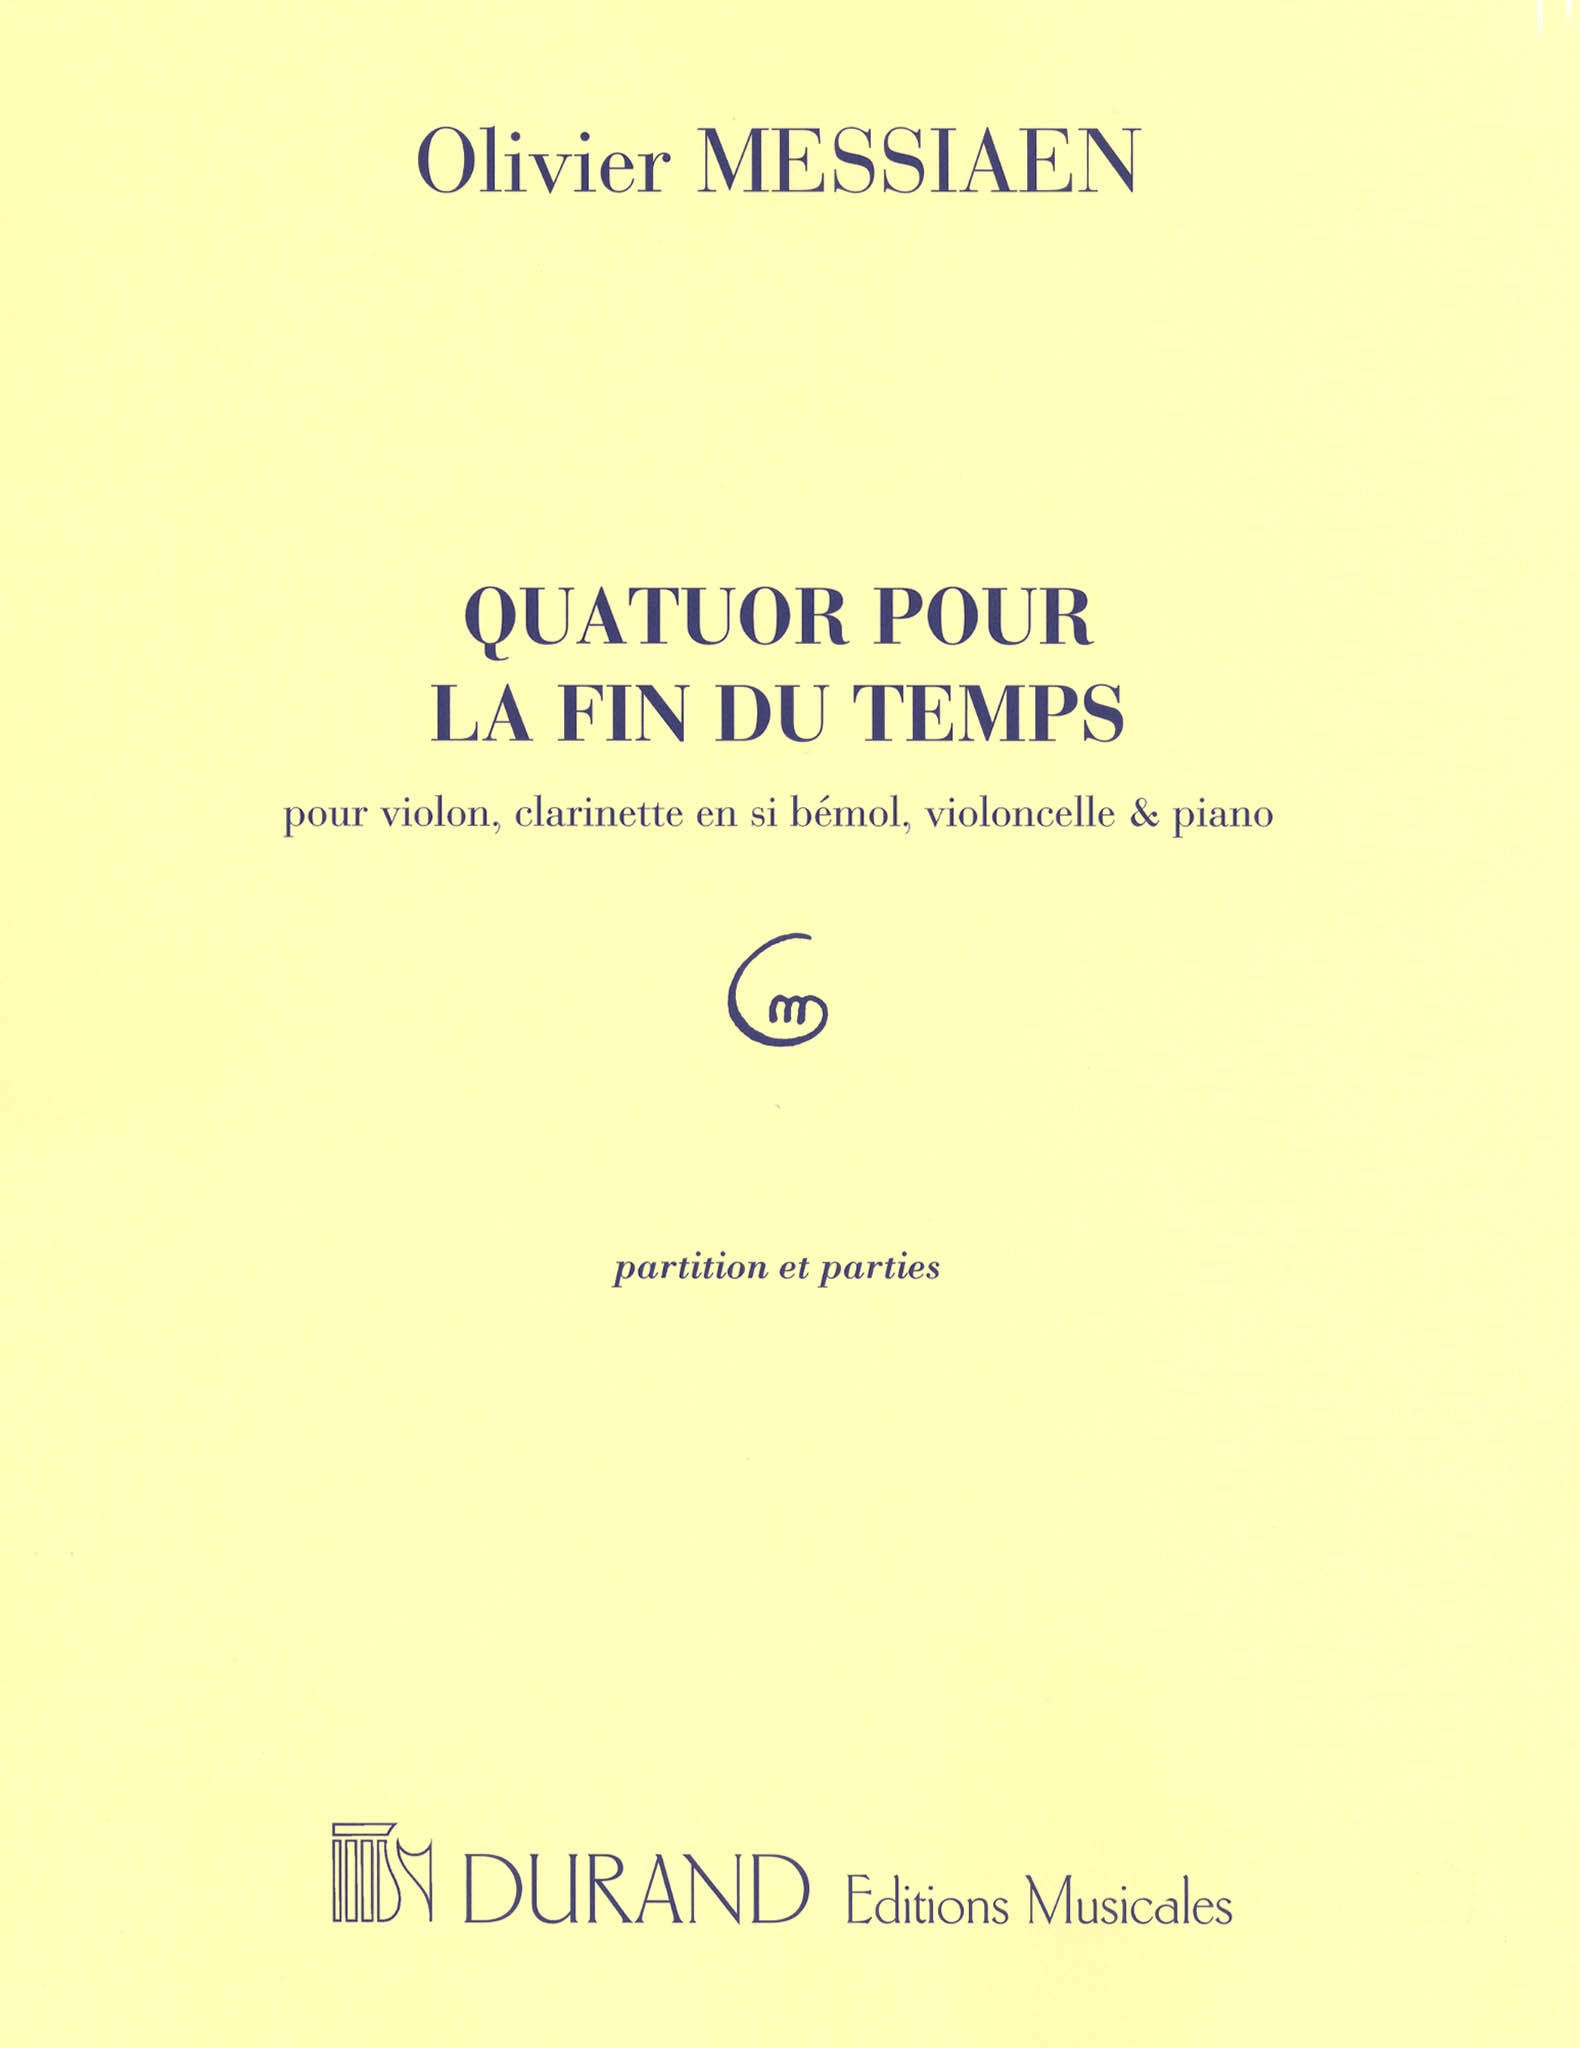 Messiaen Quatuor pour la fin du temps cover